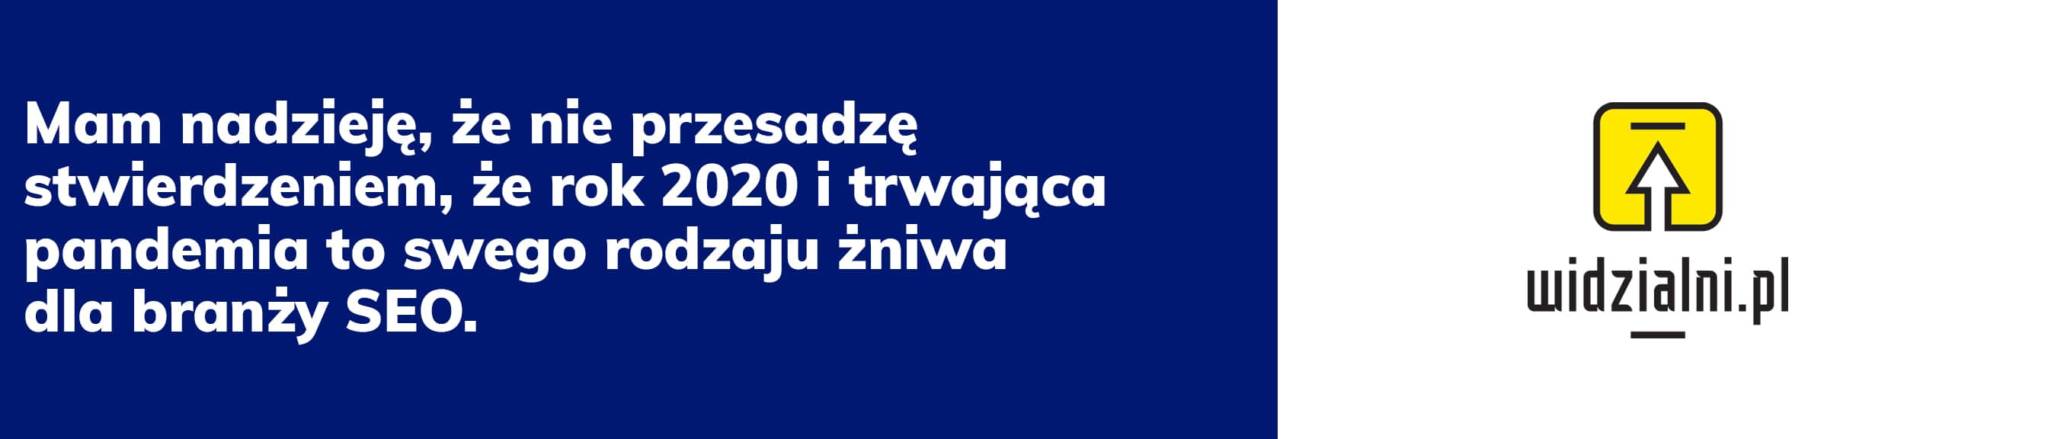 Podsumowanie roku w branży agencja widzialni.pl